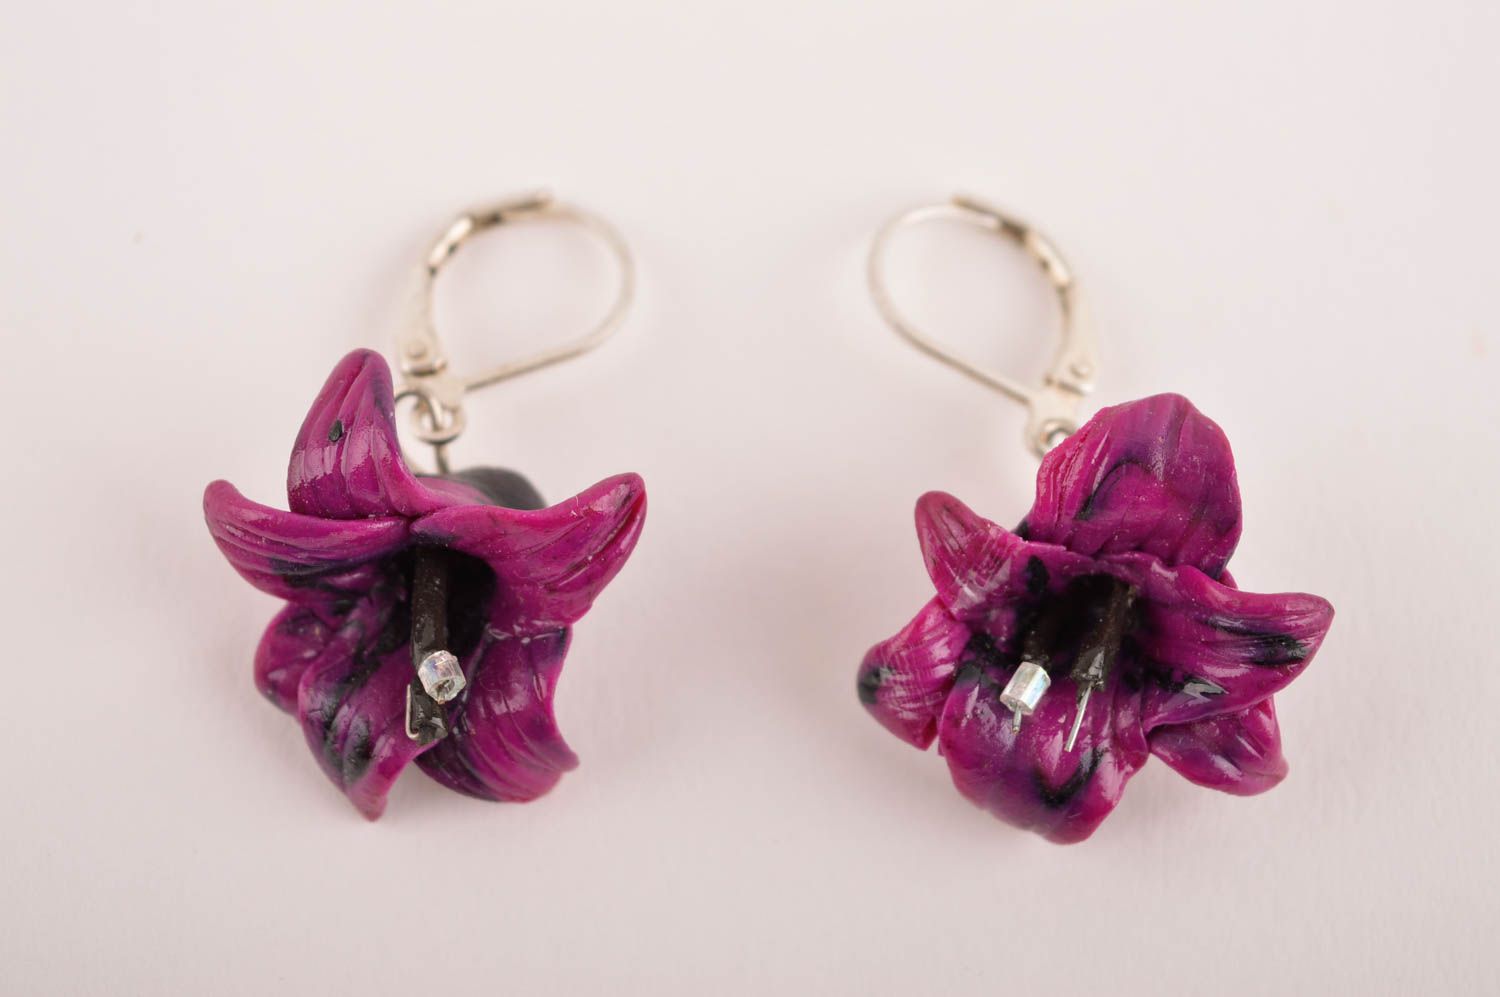 Handmade earrings designer accessory gift ideas women earrings clay jewelry photo 2